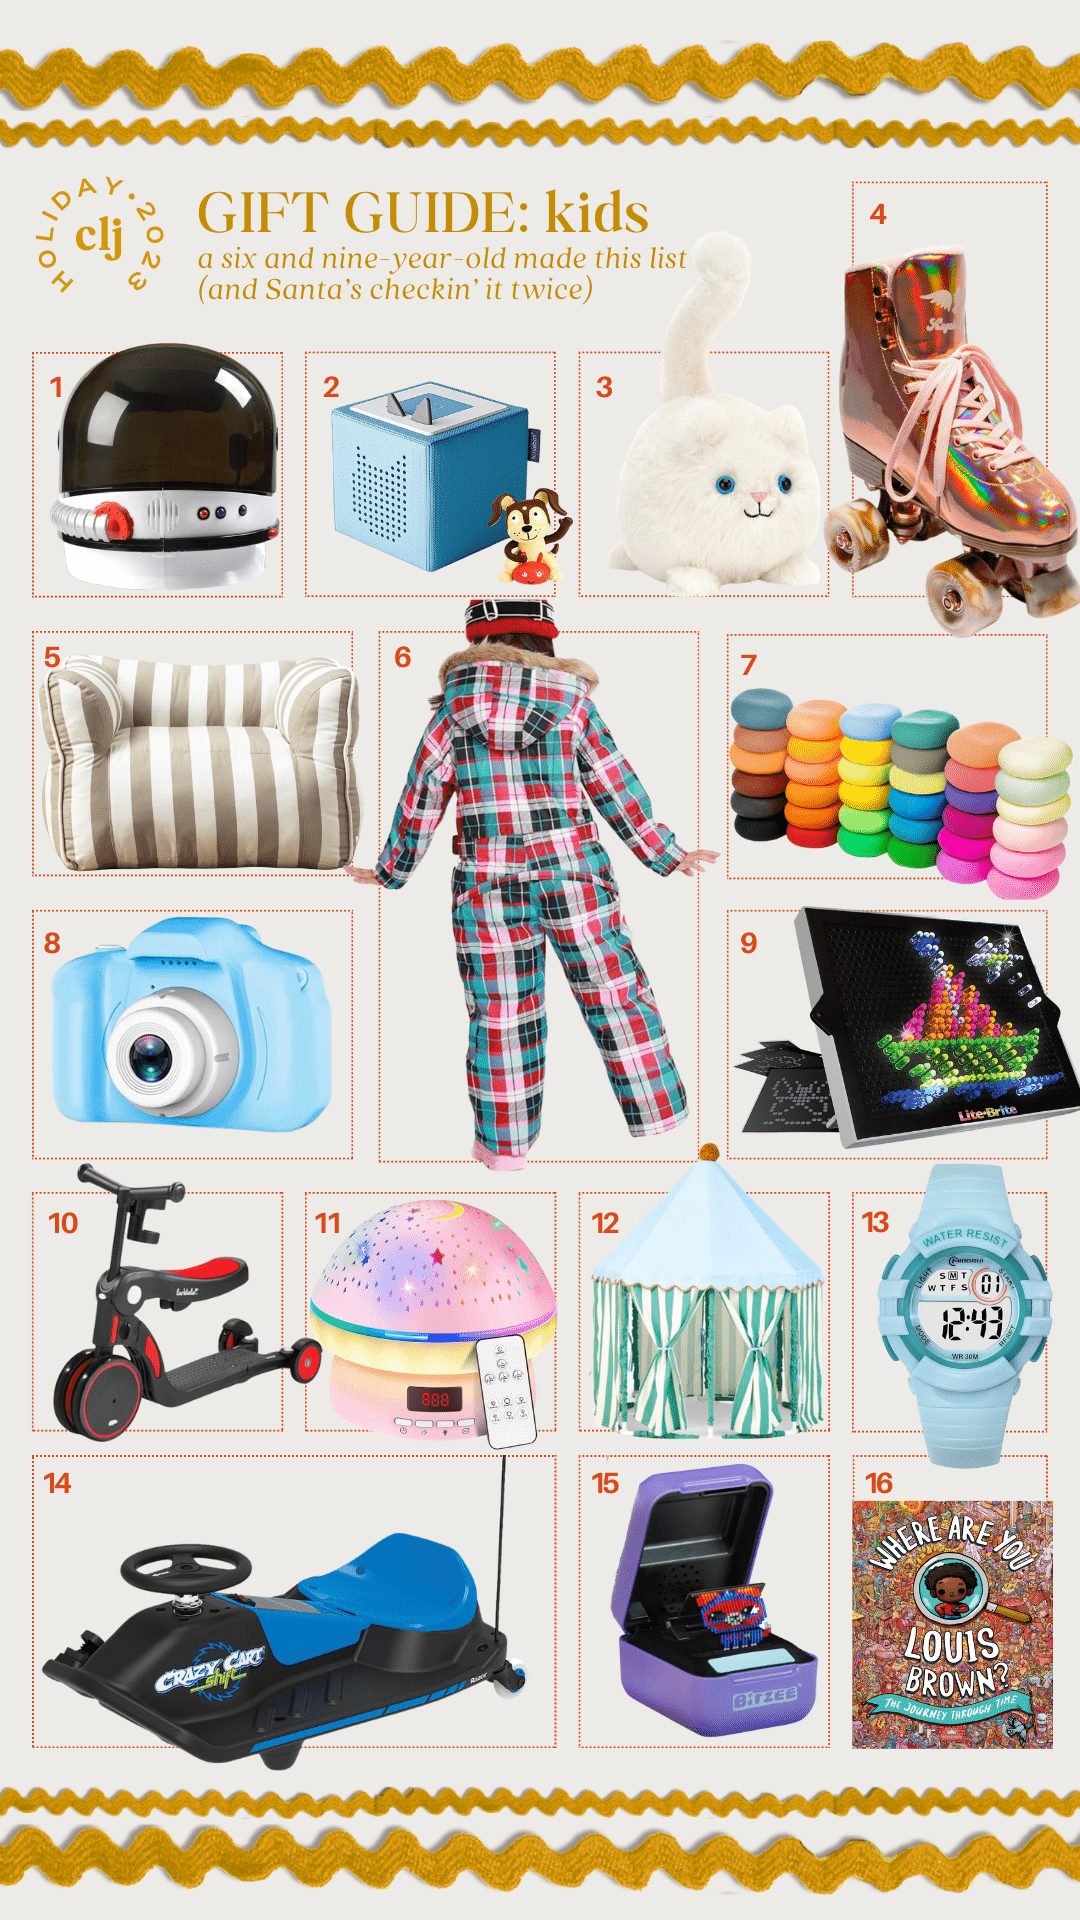 16 Best Gift Ideas For Stocking Stuffers - Chris Loves Julia